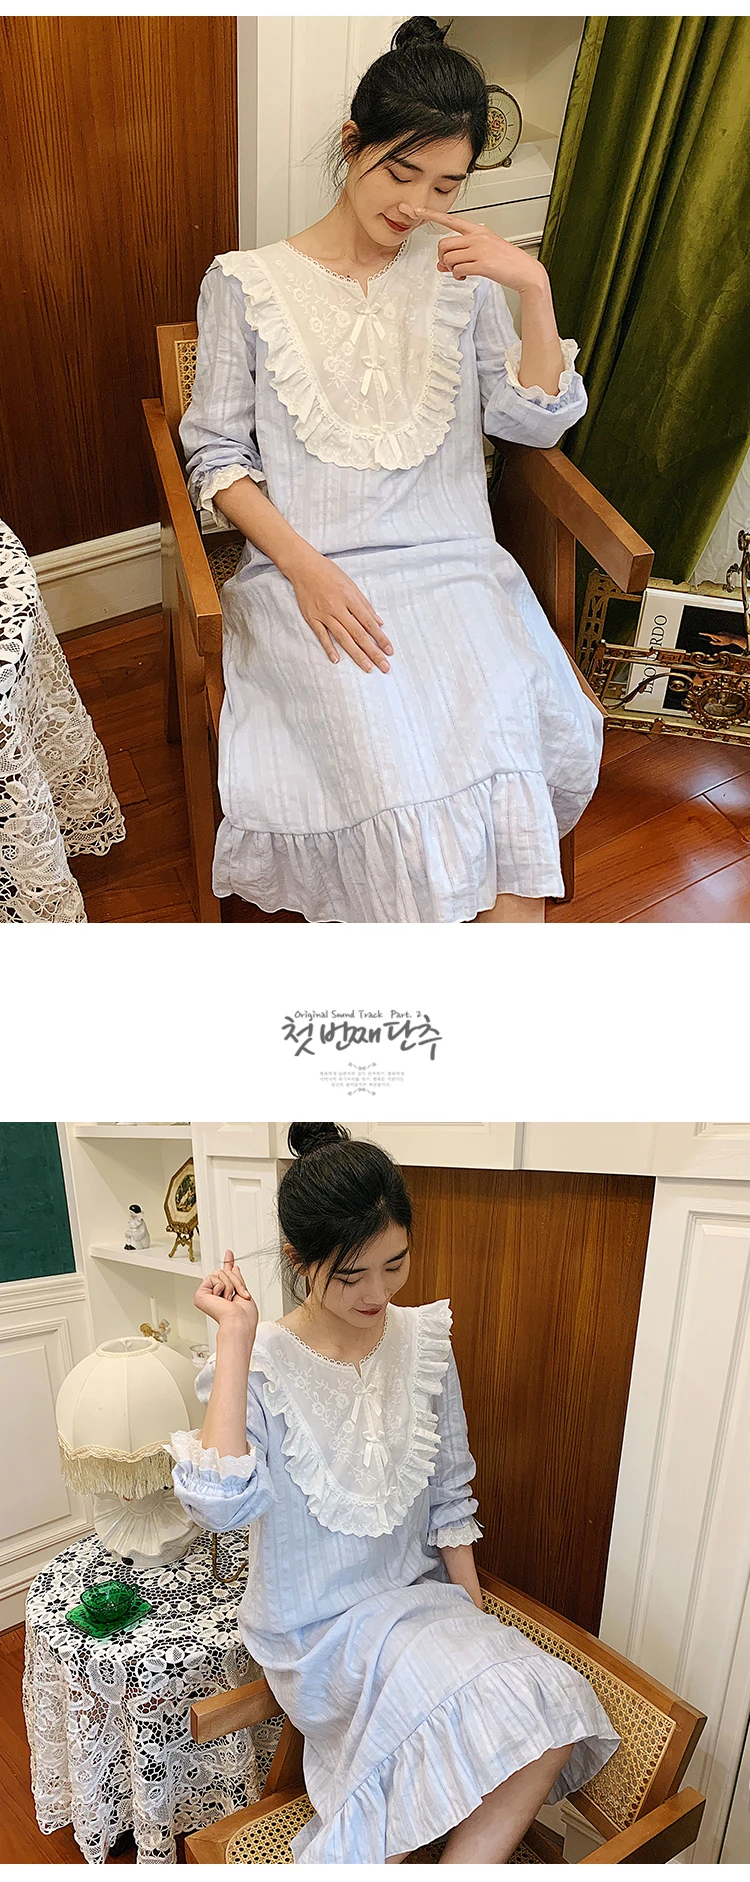 Пикантная Ночная длинная рубашка домашнее белье платье принцессы винтажная вышивка одежда для сна ночная рубашка хлопок Большие размеры